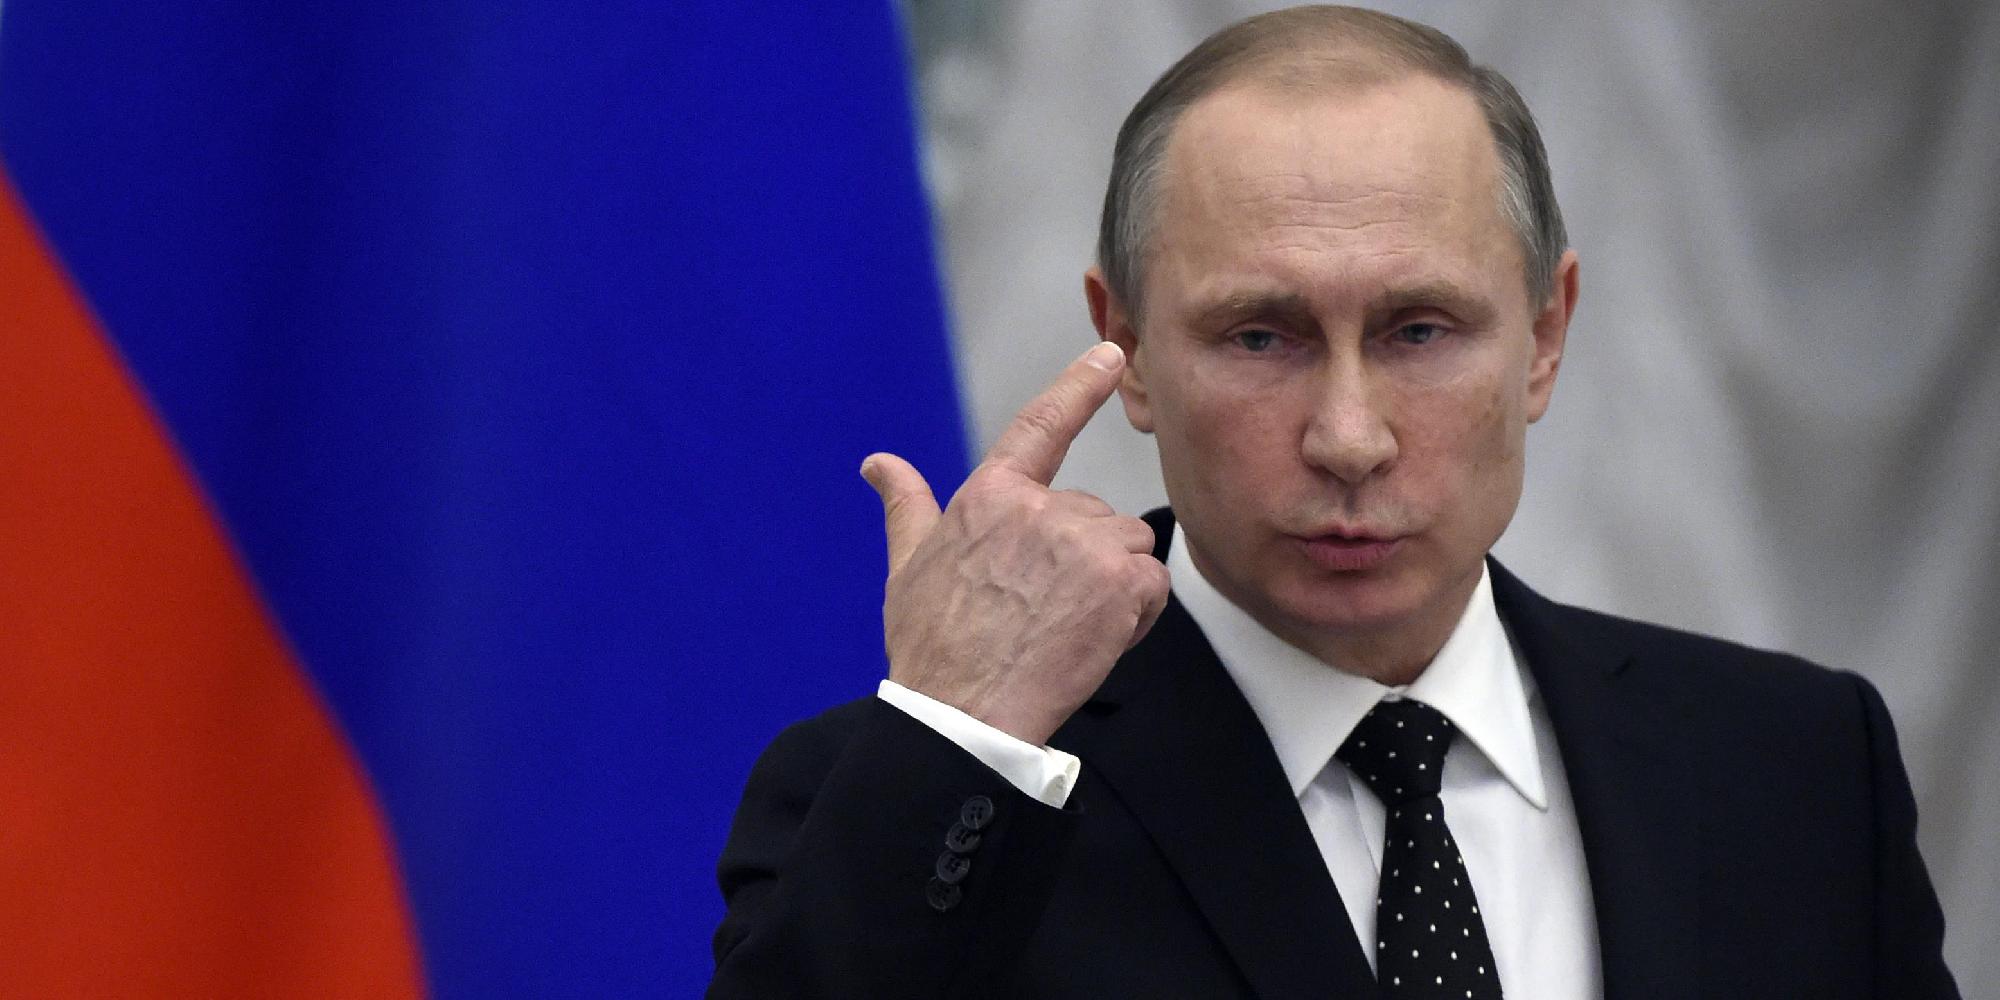 Putyin kész találkozni Trumppal, ha hivatalos meghívást kap